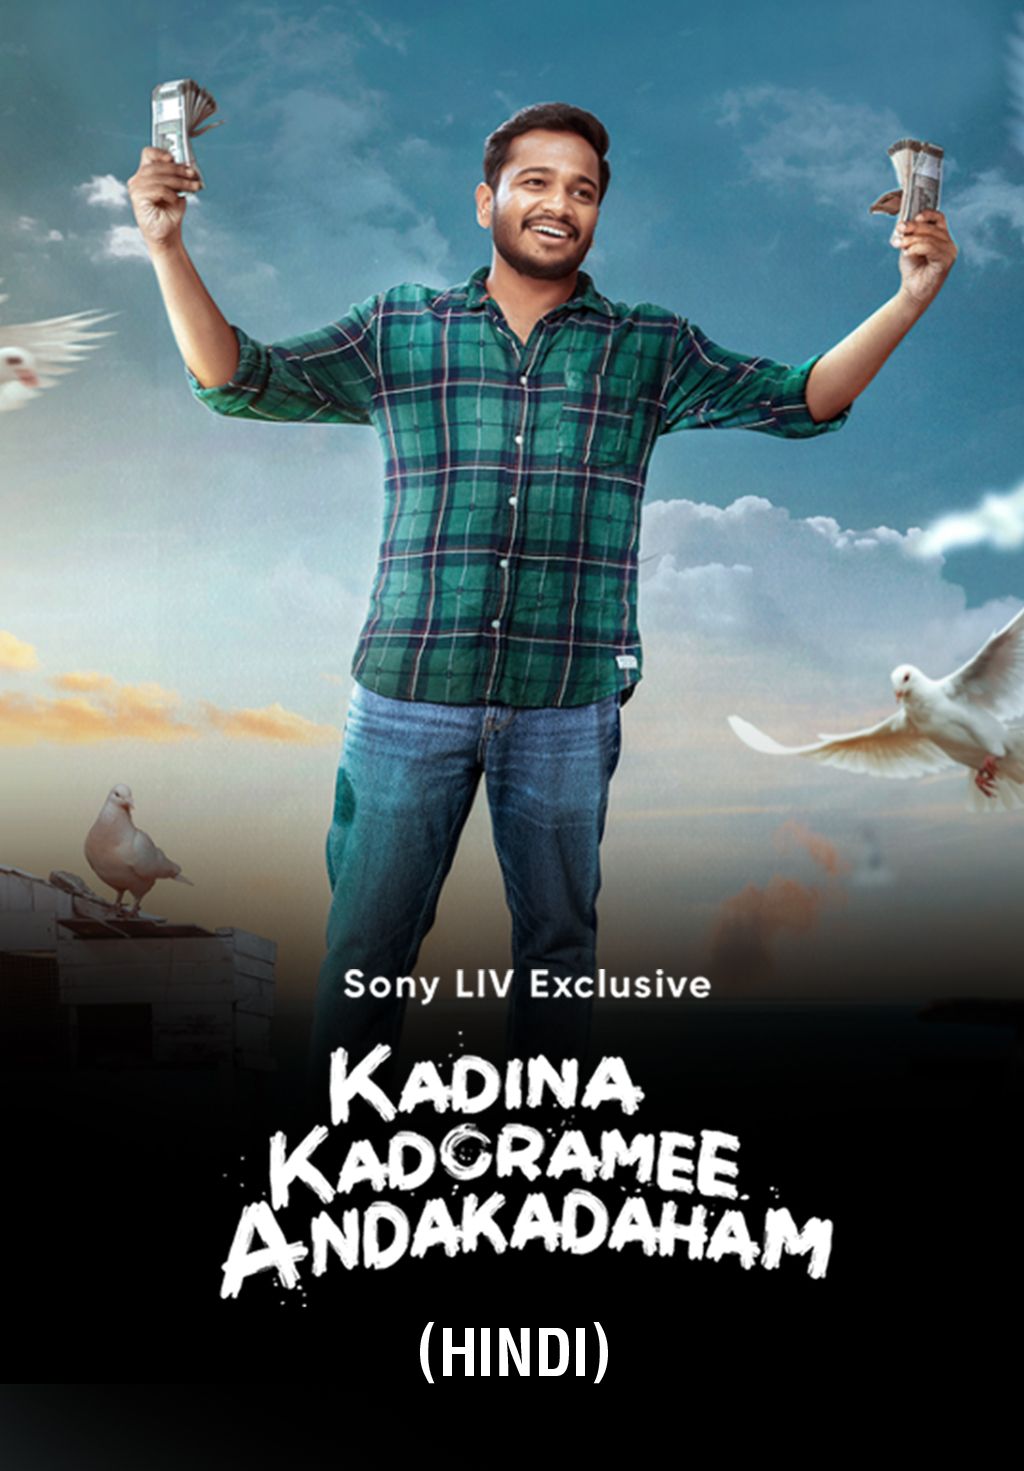 Kadina Kadoramee Andakadaham (Hindi)